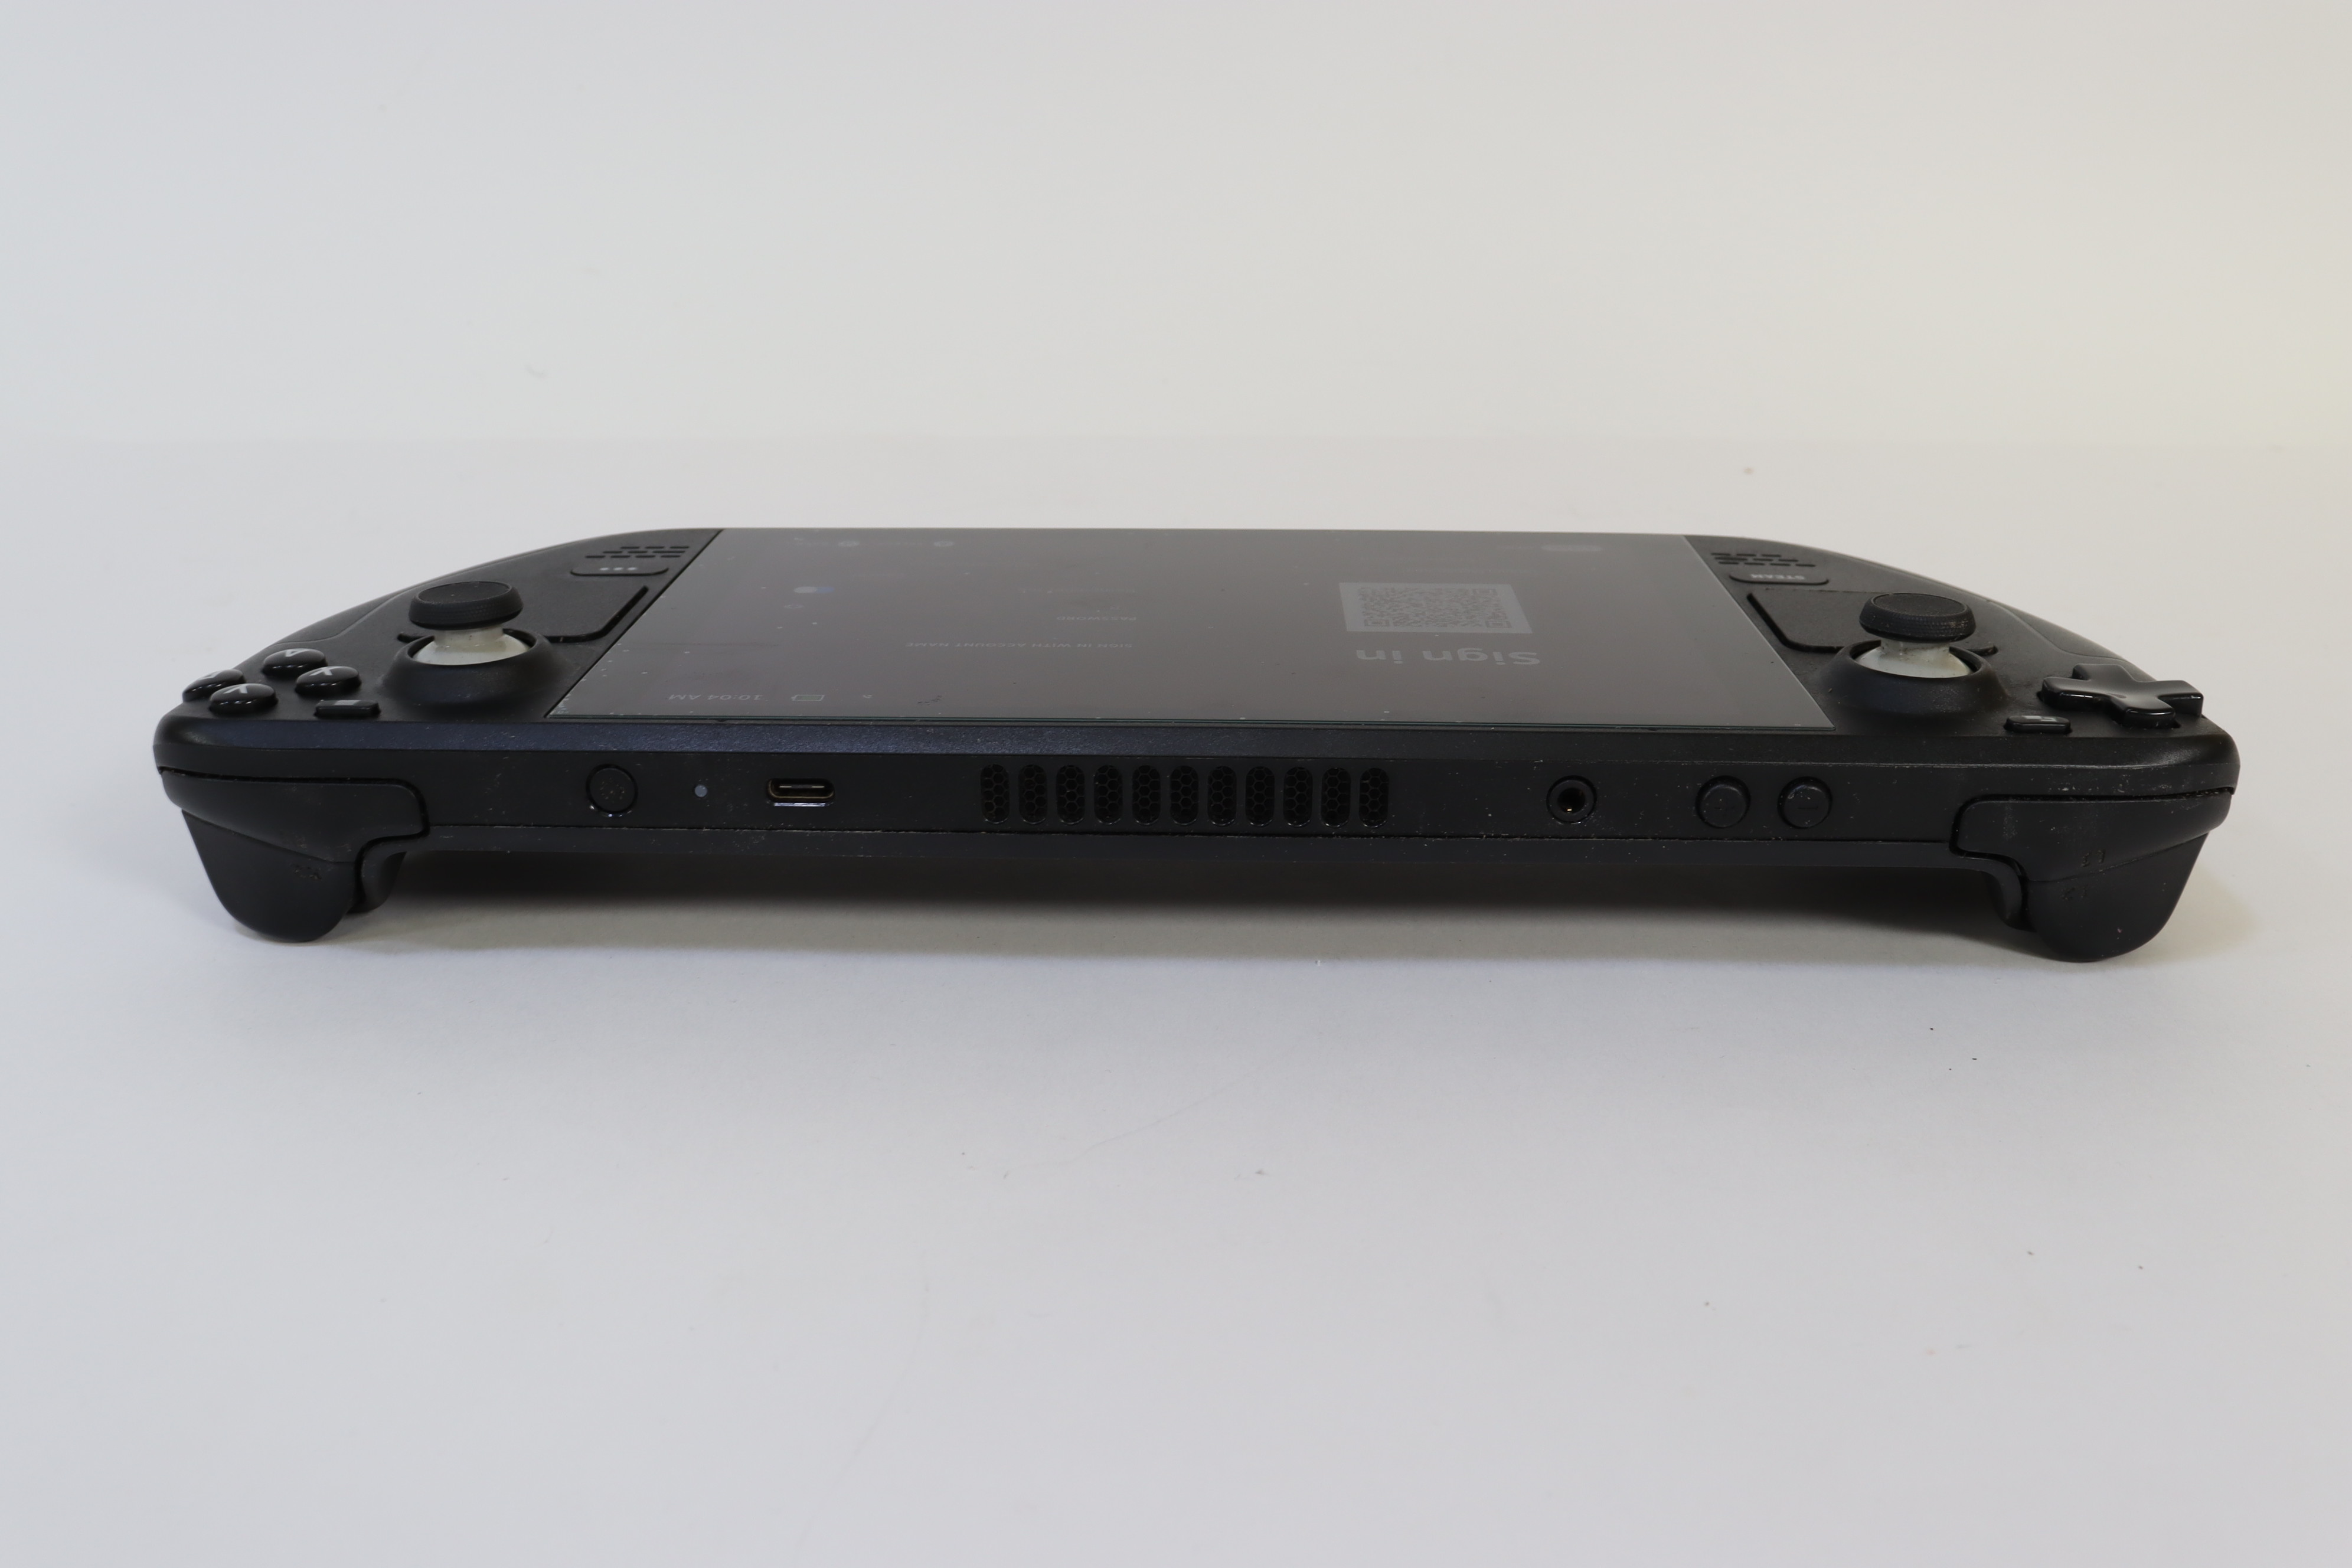 Console Portátil Valve Steam Deck 1010 Wi-Fi / Bluetooth 7 com 64GB eMMC -  Preto